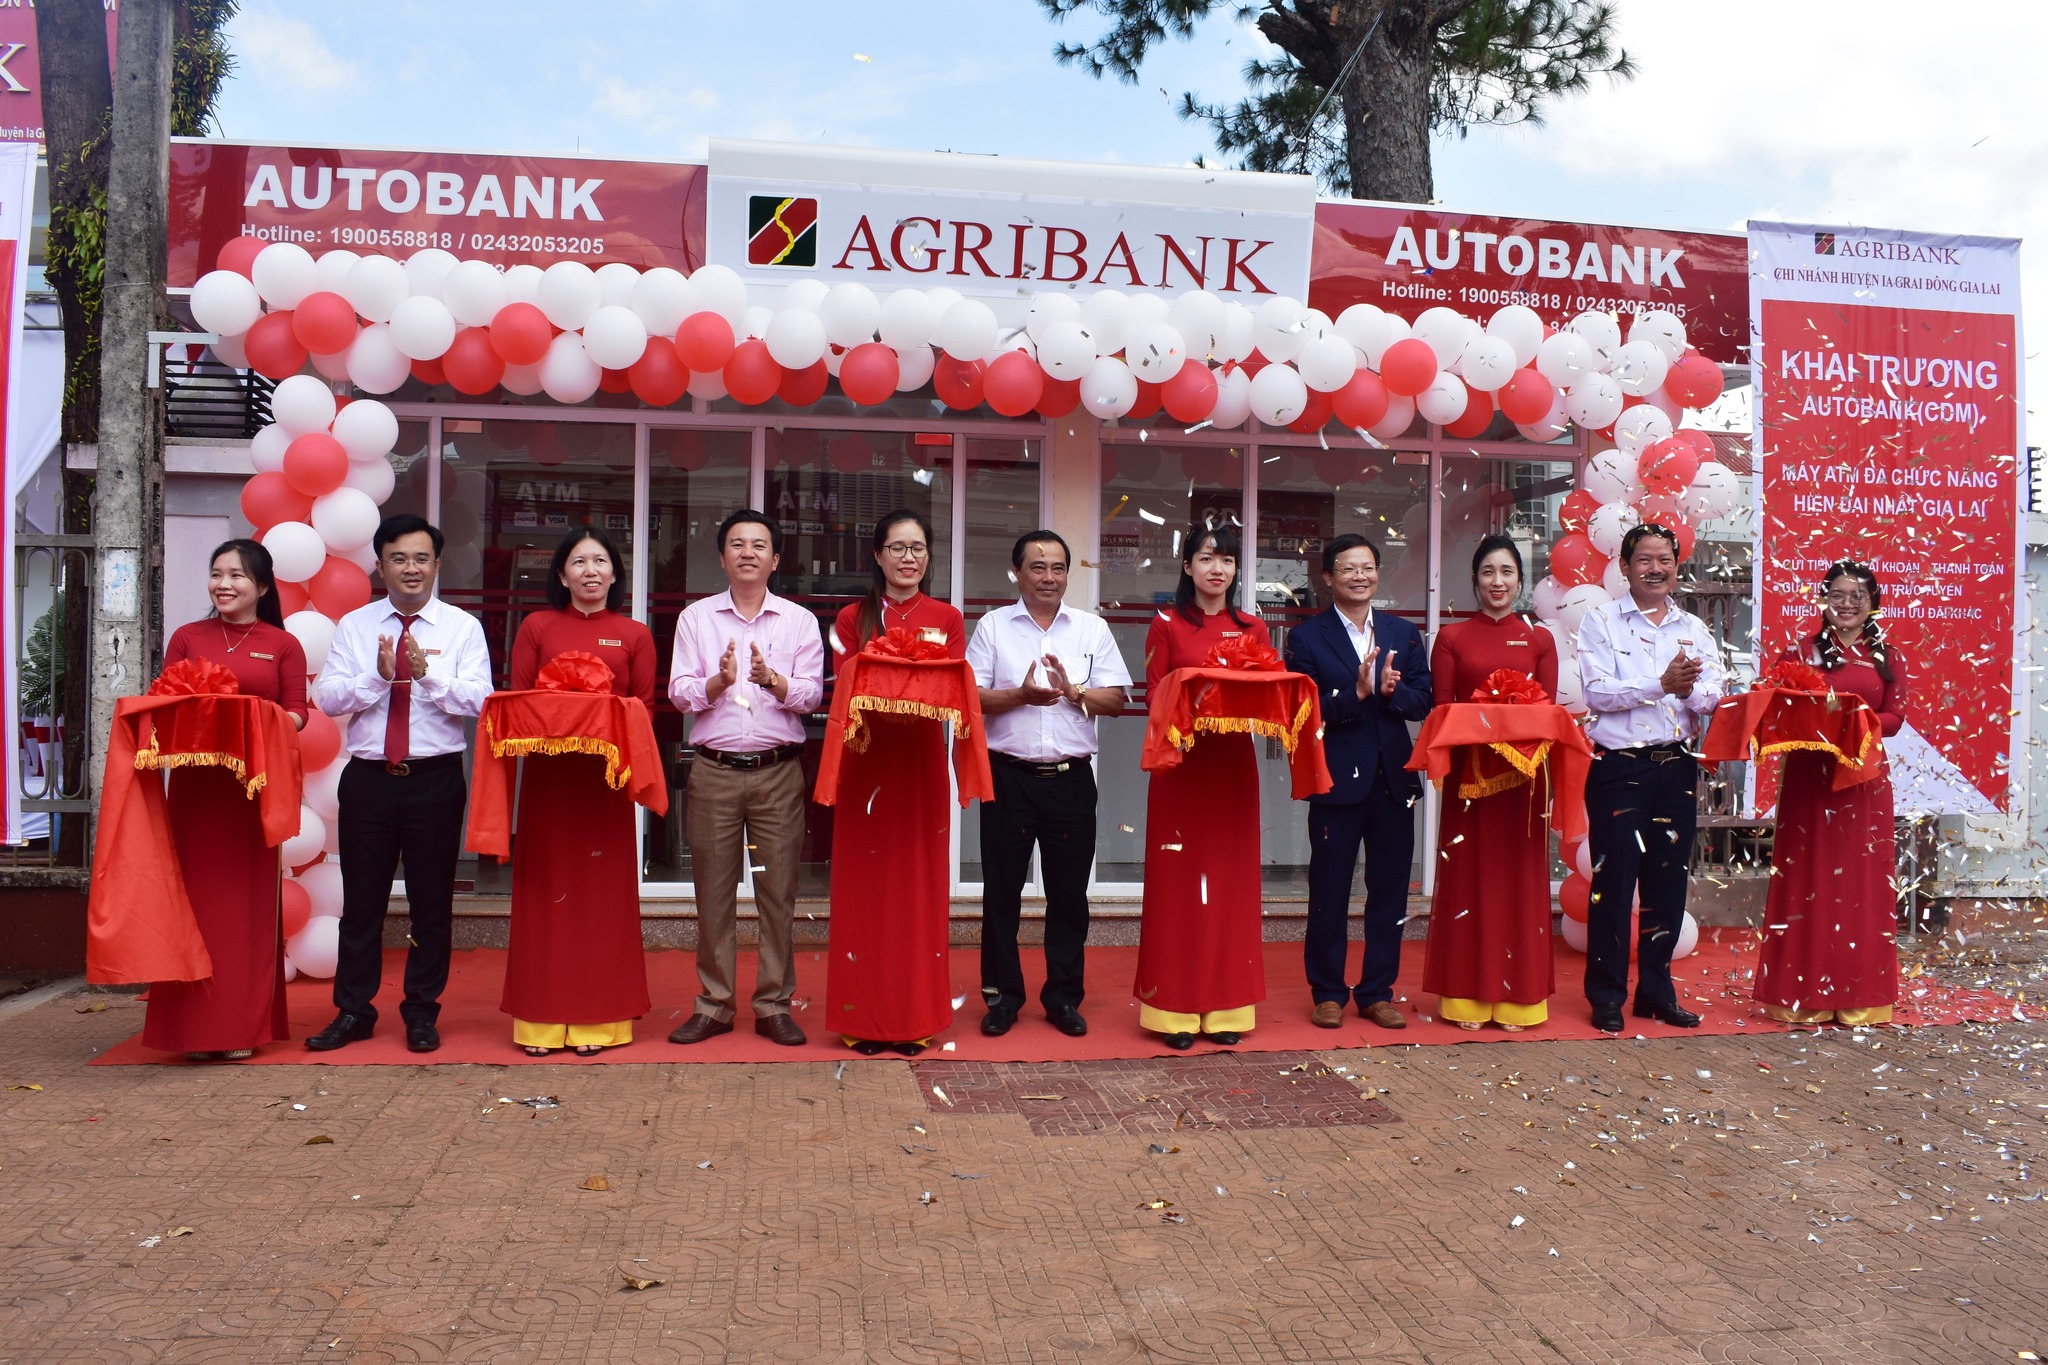 Article Ngân hàng NN&PT nông thôn Việt Nam chi nhánh Ia Grai Đông Gia Lai khai trương máy ATM đa chức năng hiện đại nhất